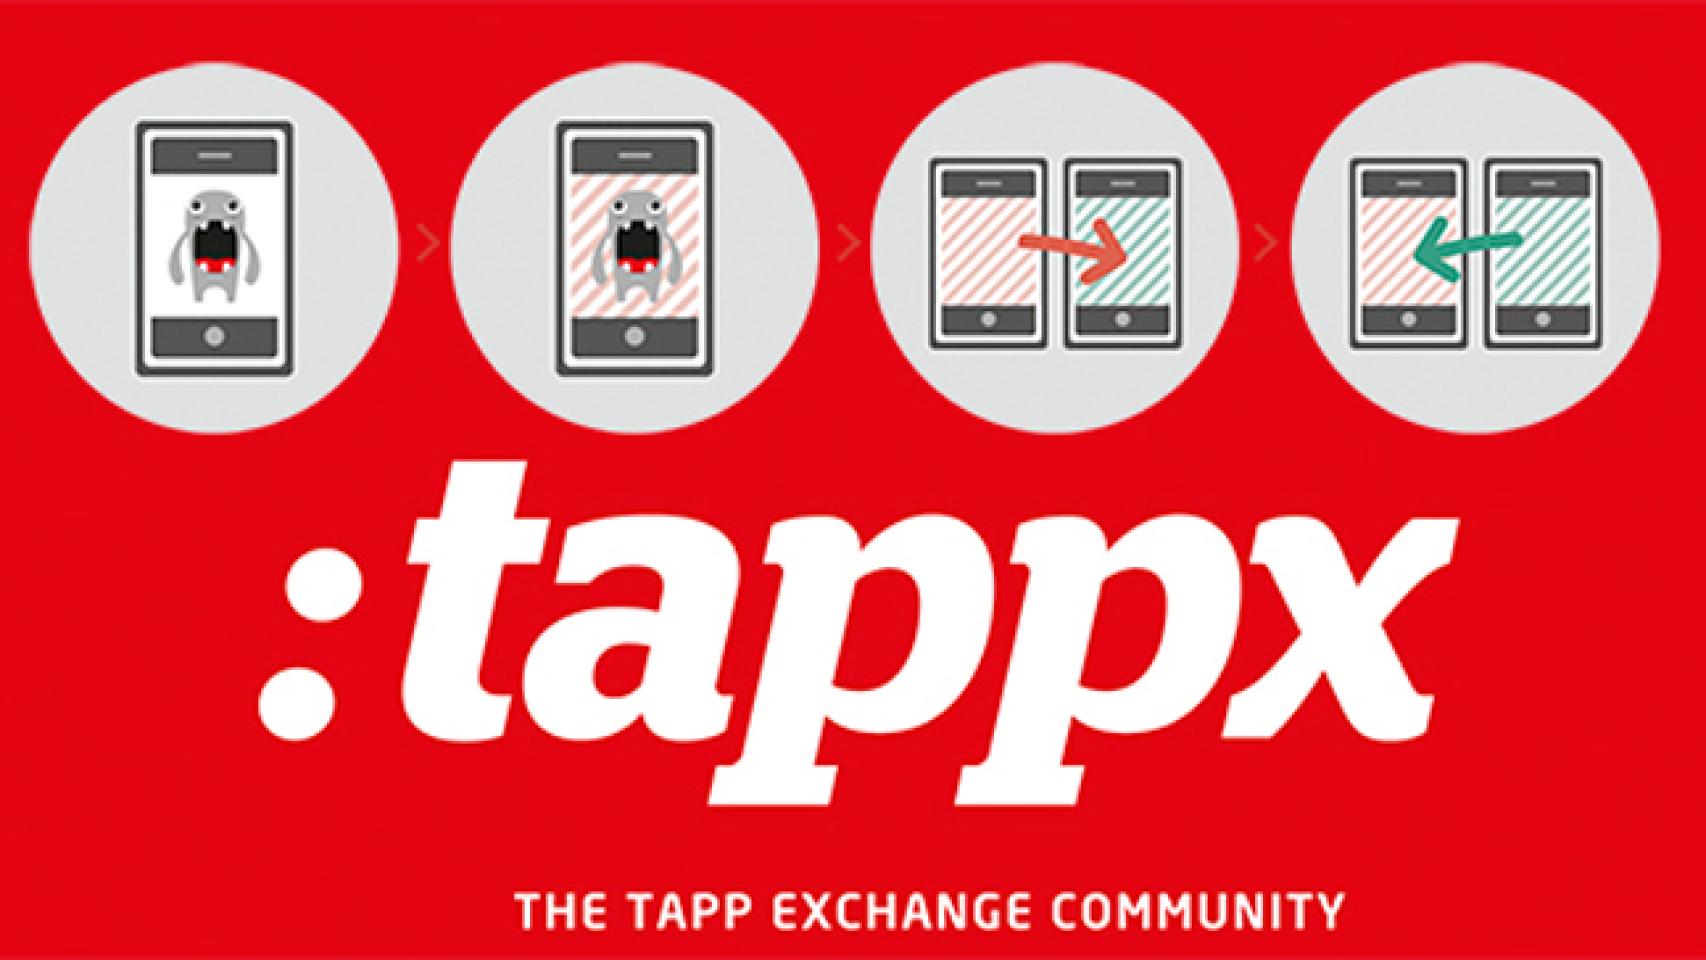 ¿Tienes una app? Consigue descargas gratis con la promoción cruzada de Tappx